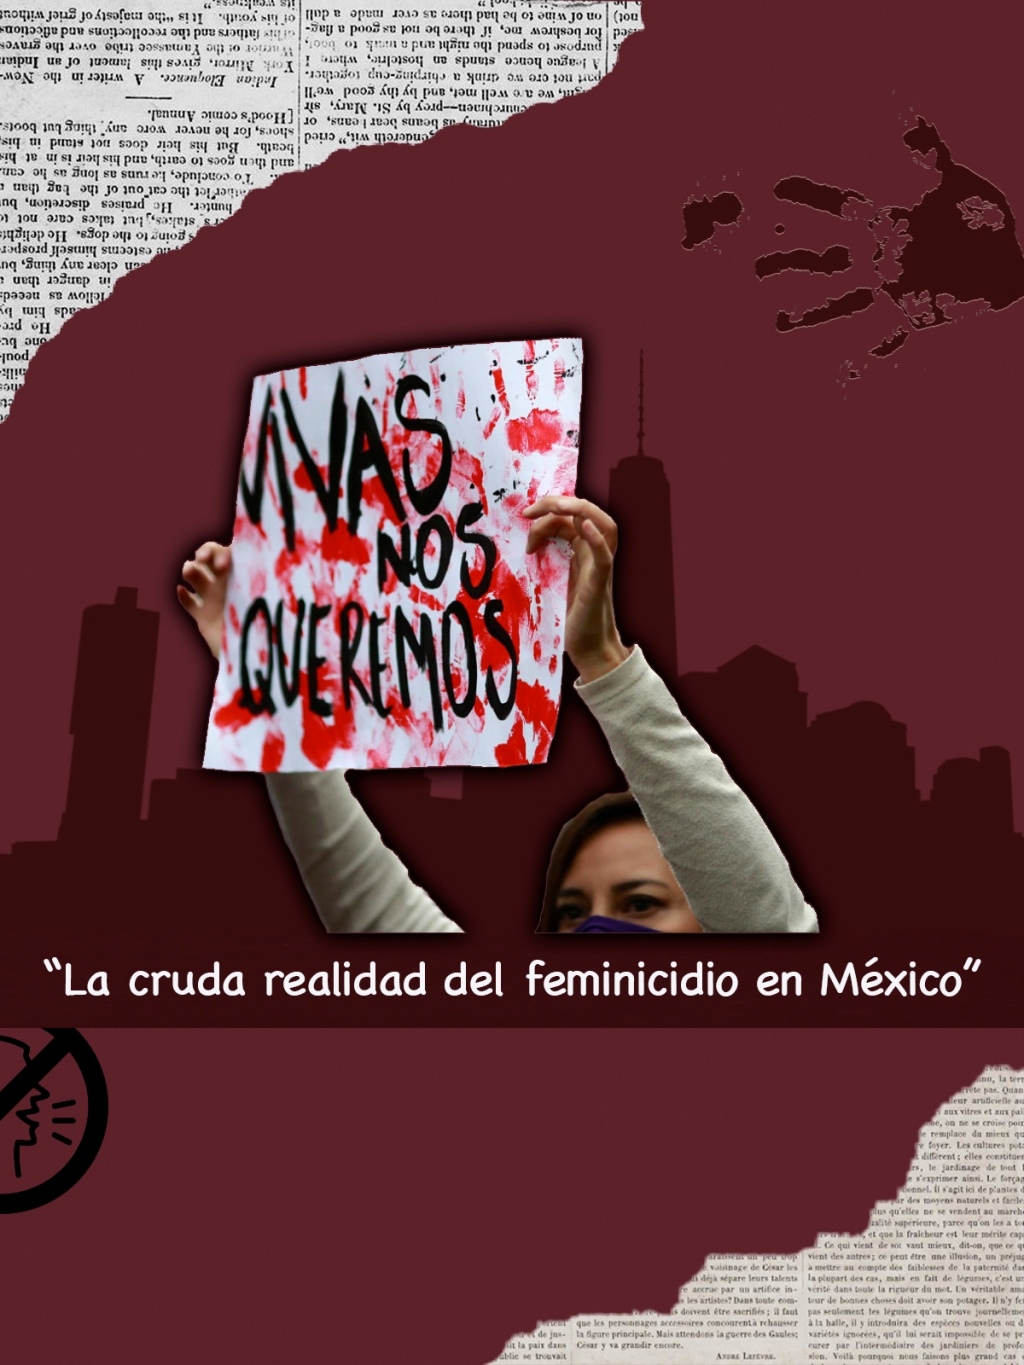 La cruda realidad del feminicidio en México